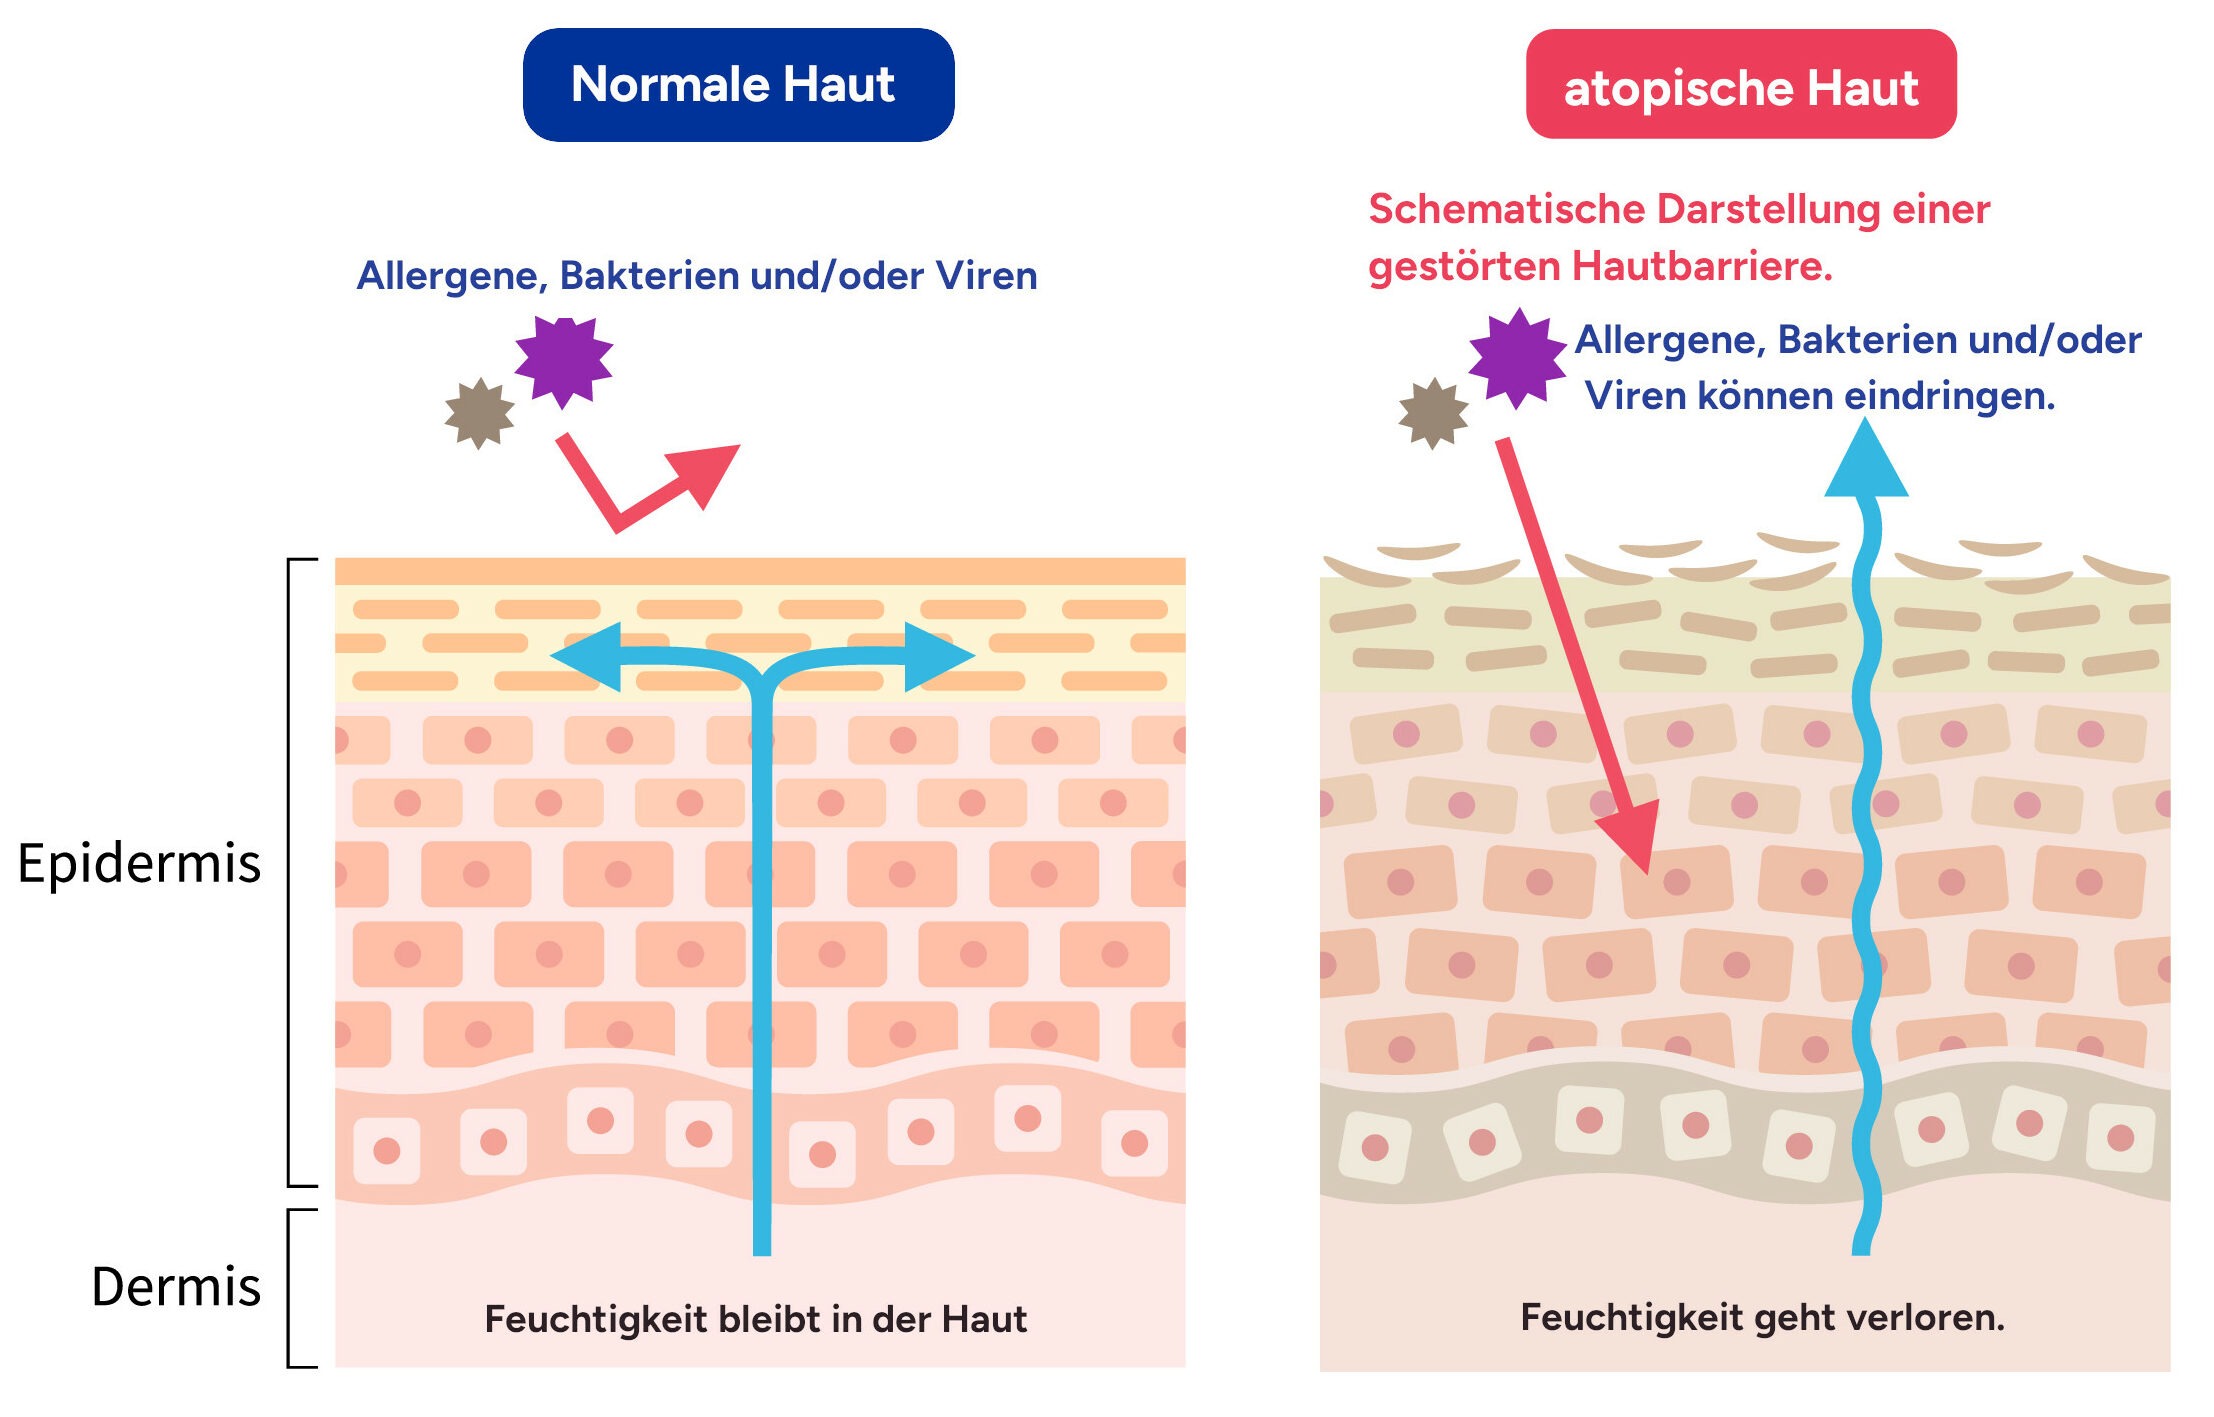 Schemazeichnung von normaler Hautbarriere versus einer gestörten Hautbarriere, bei der Bakterien, Viren und oder andere Umweltfaktoren in die Haut eindringen können.